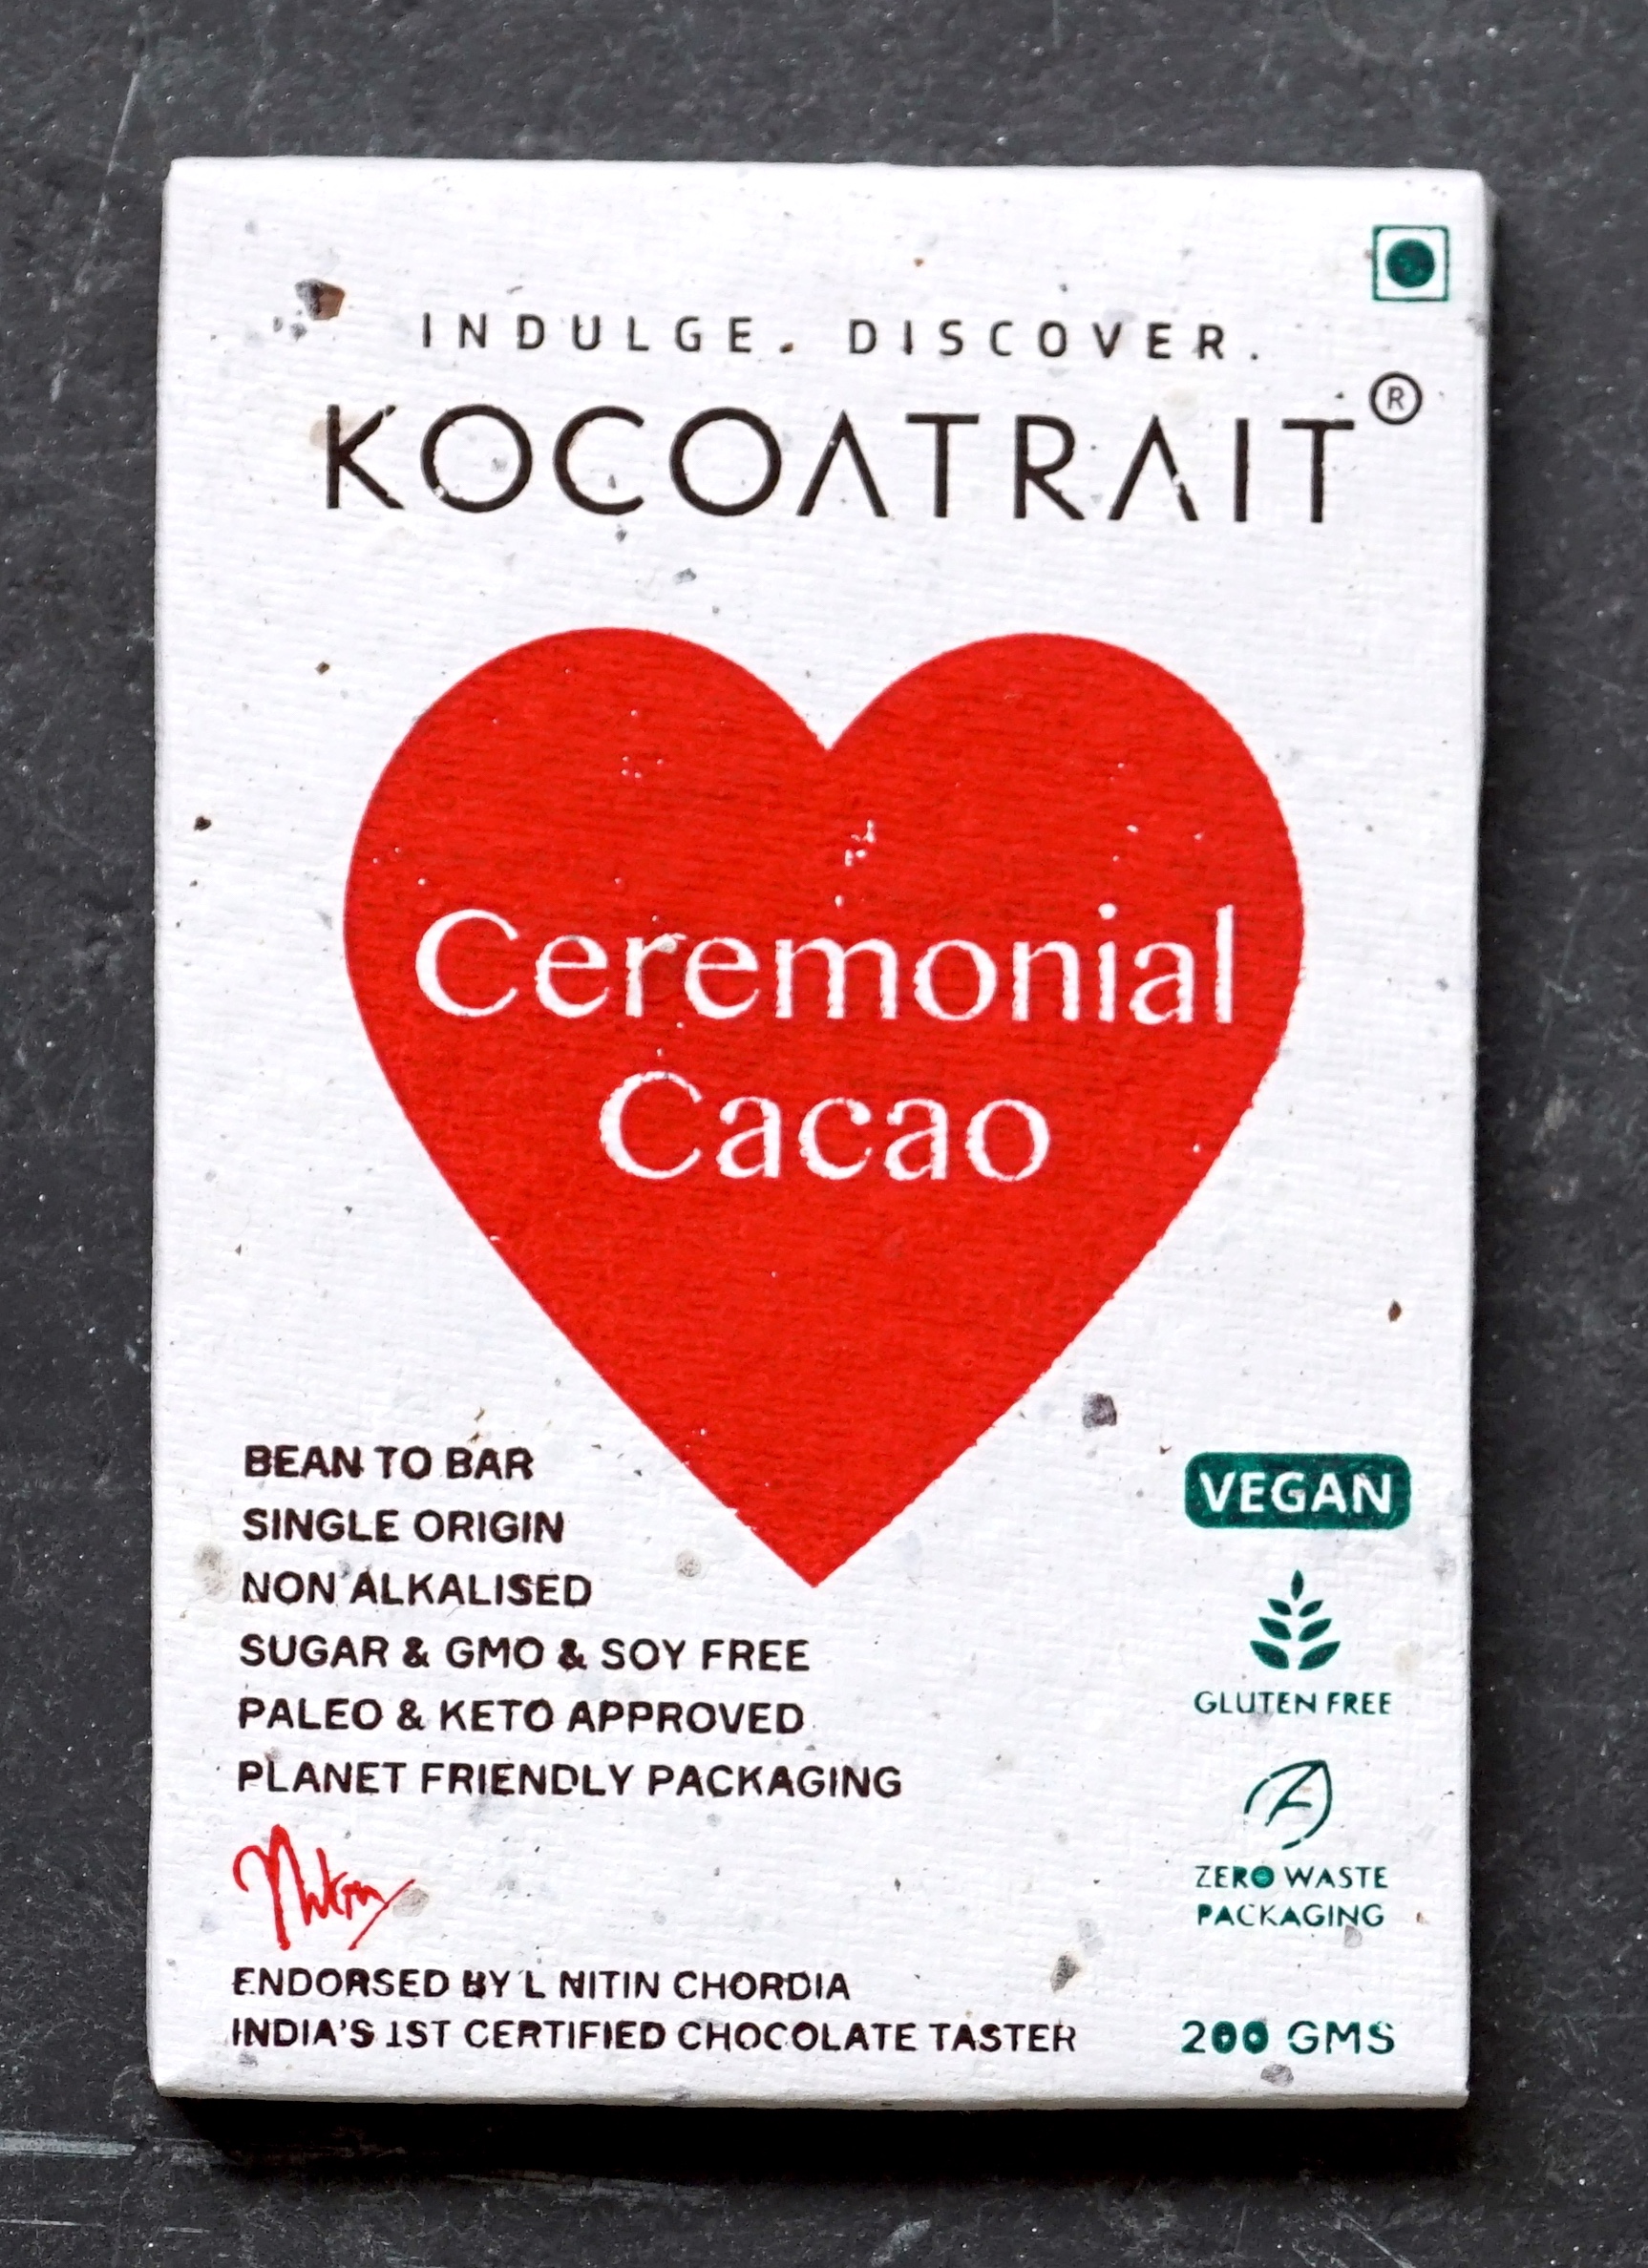 Kocoatrait Ceremonial Cacao